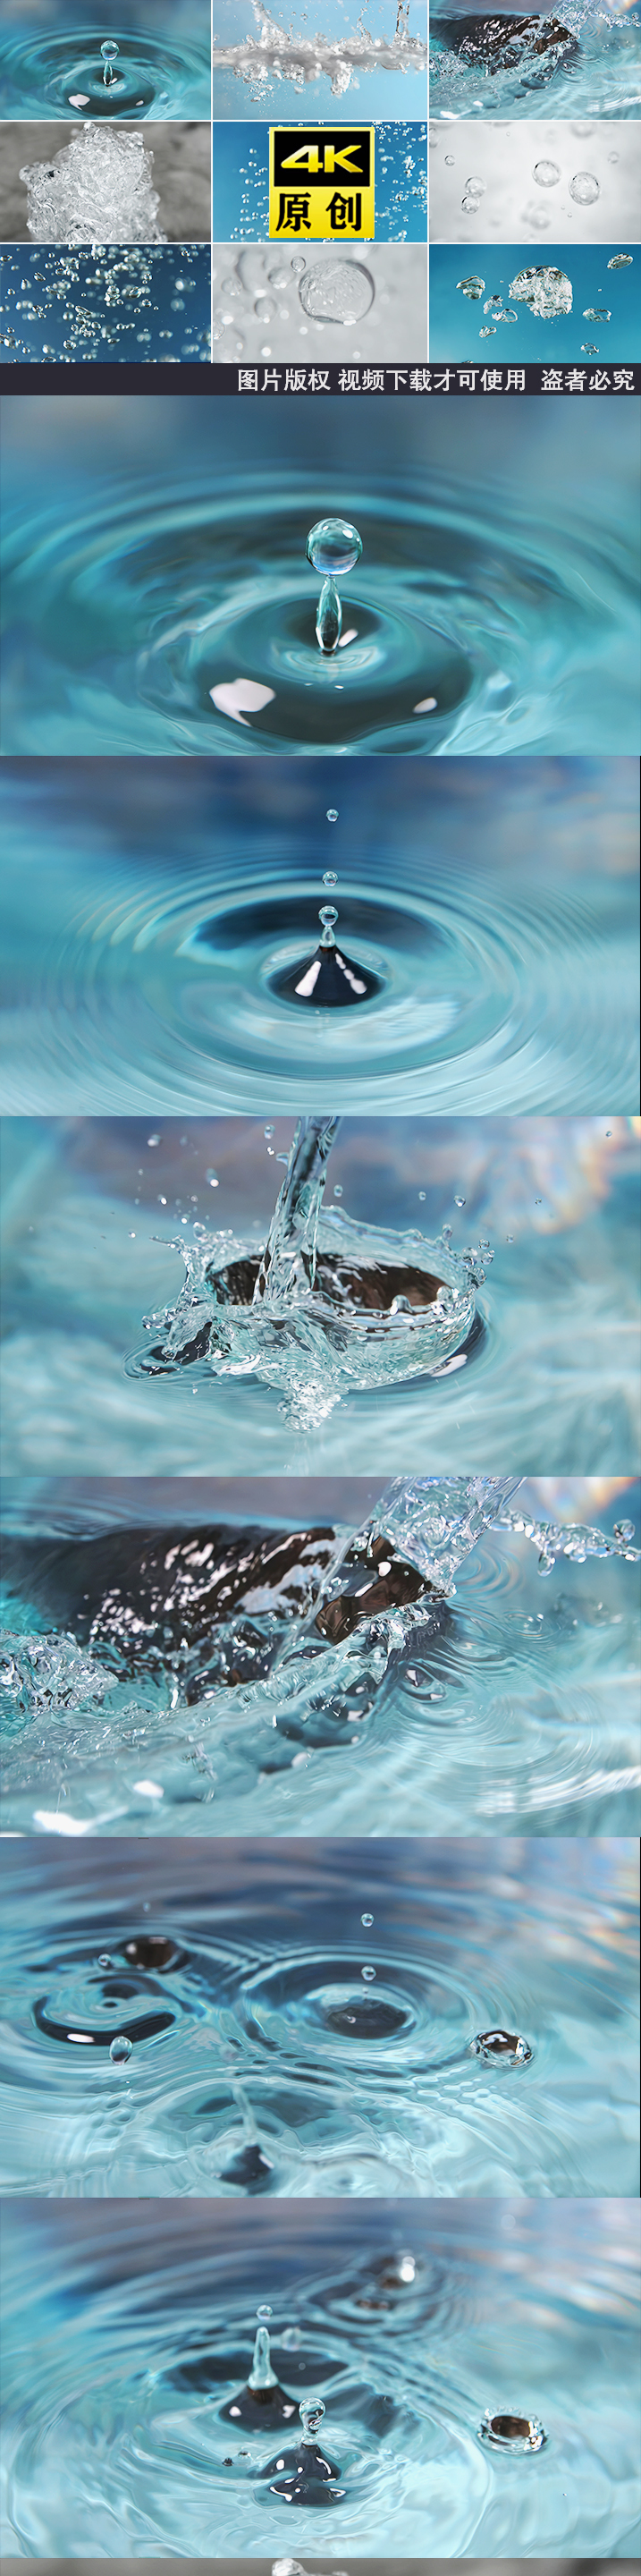 水大自然水滴滴水空间水创意水意境水滴滴水